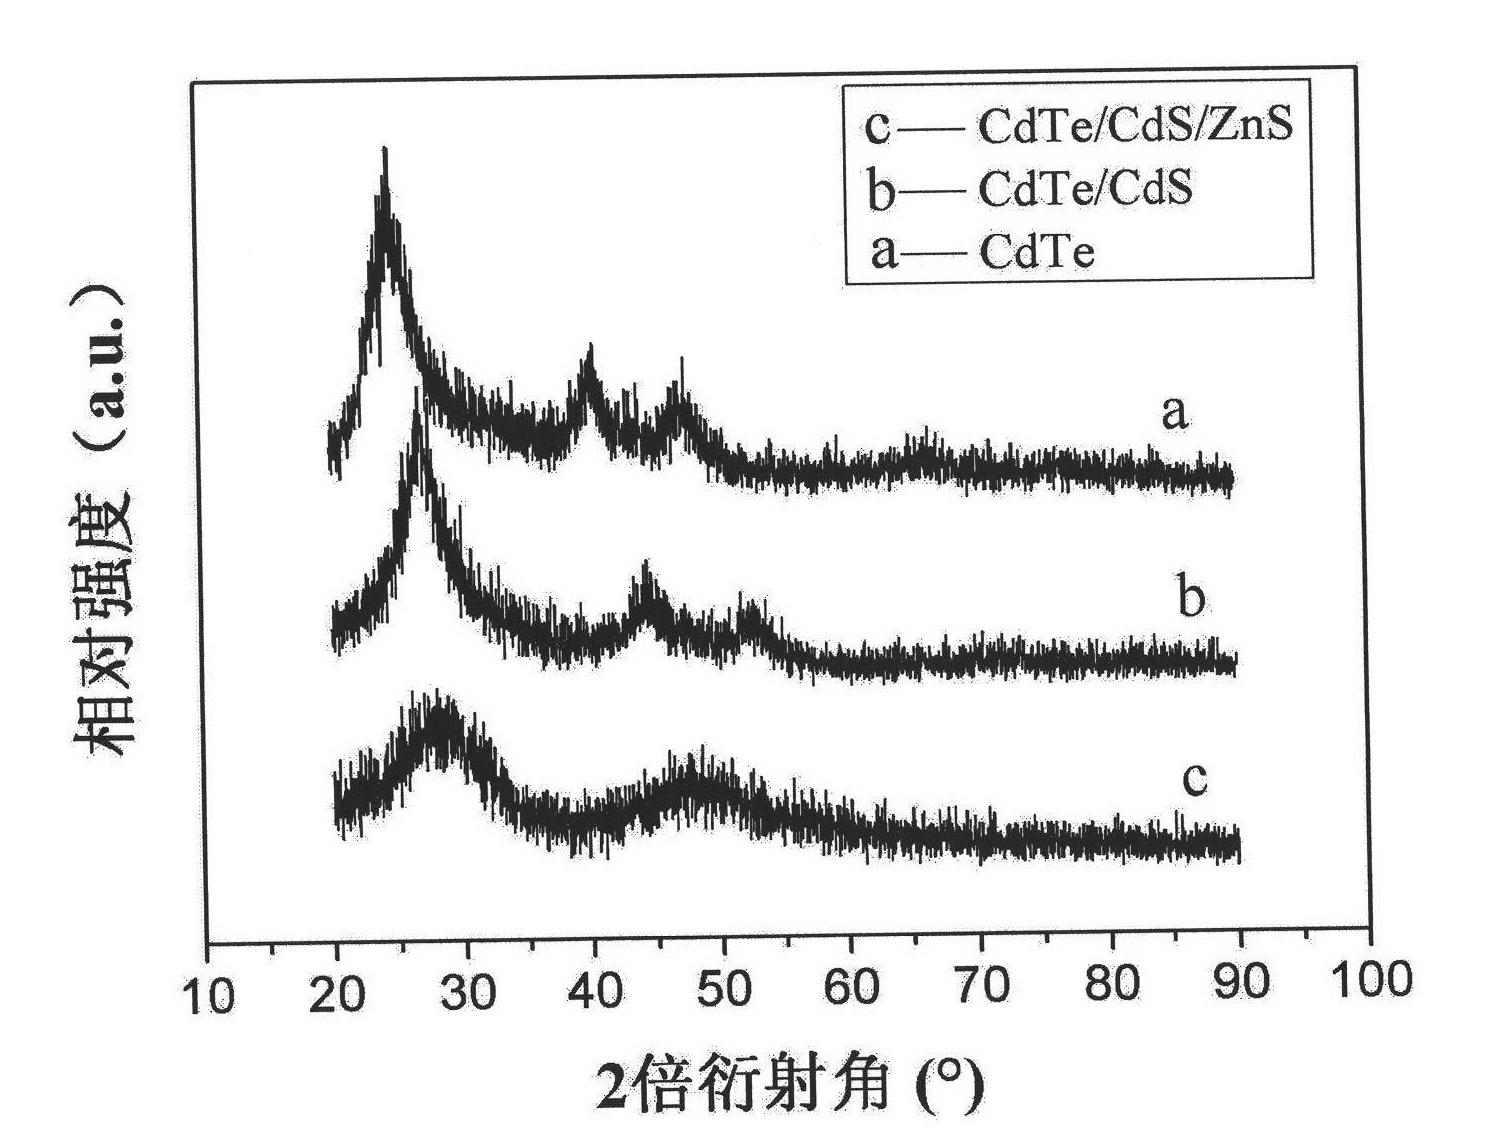 Synthetic method of cadmium telluride/cadmium sulfide/zinc sulfide quantum dots